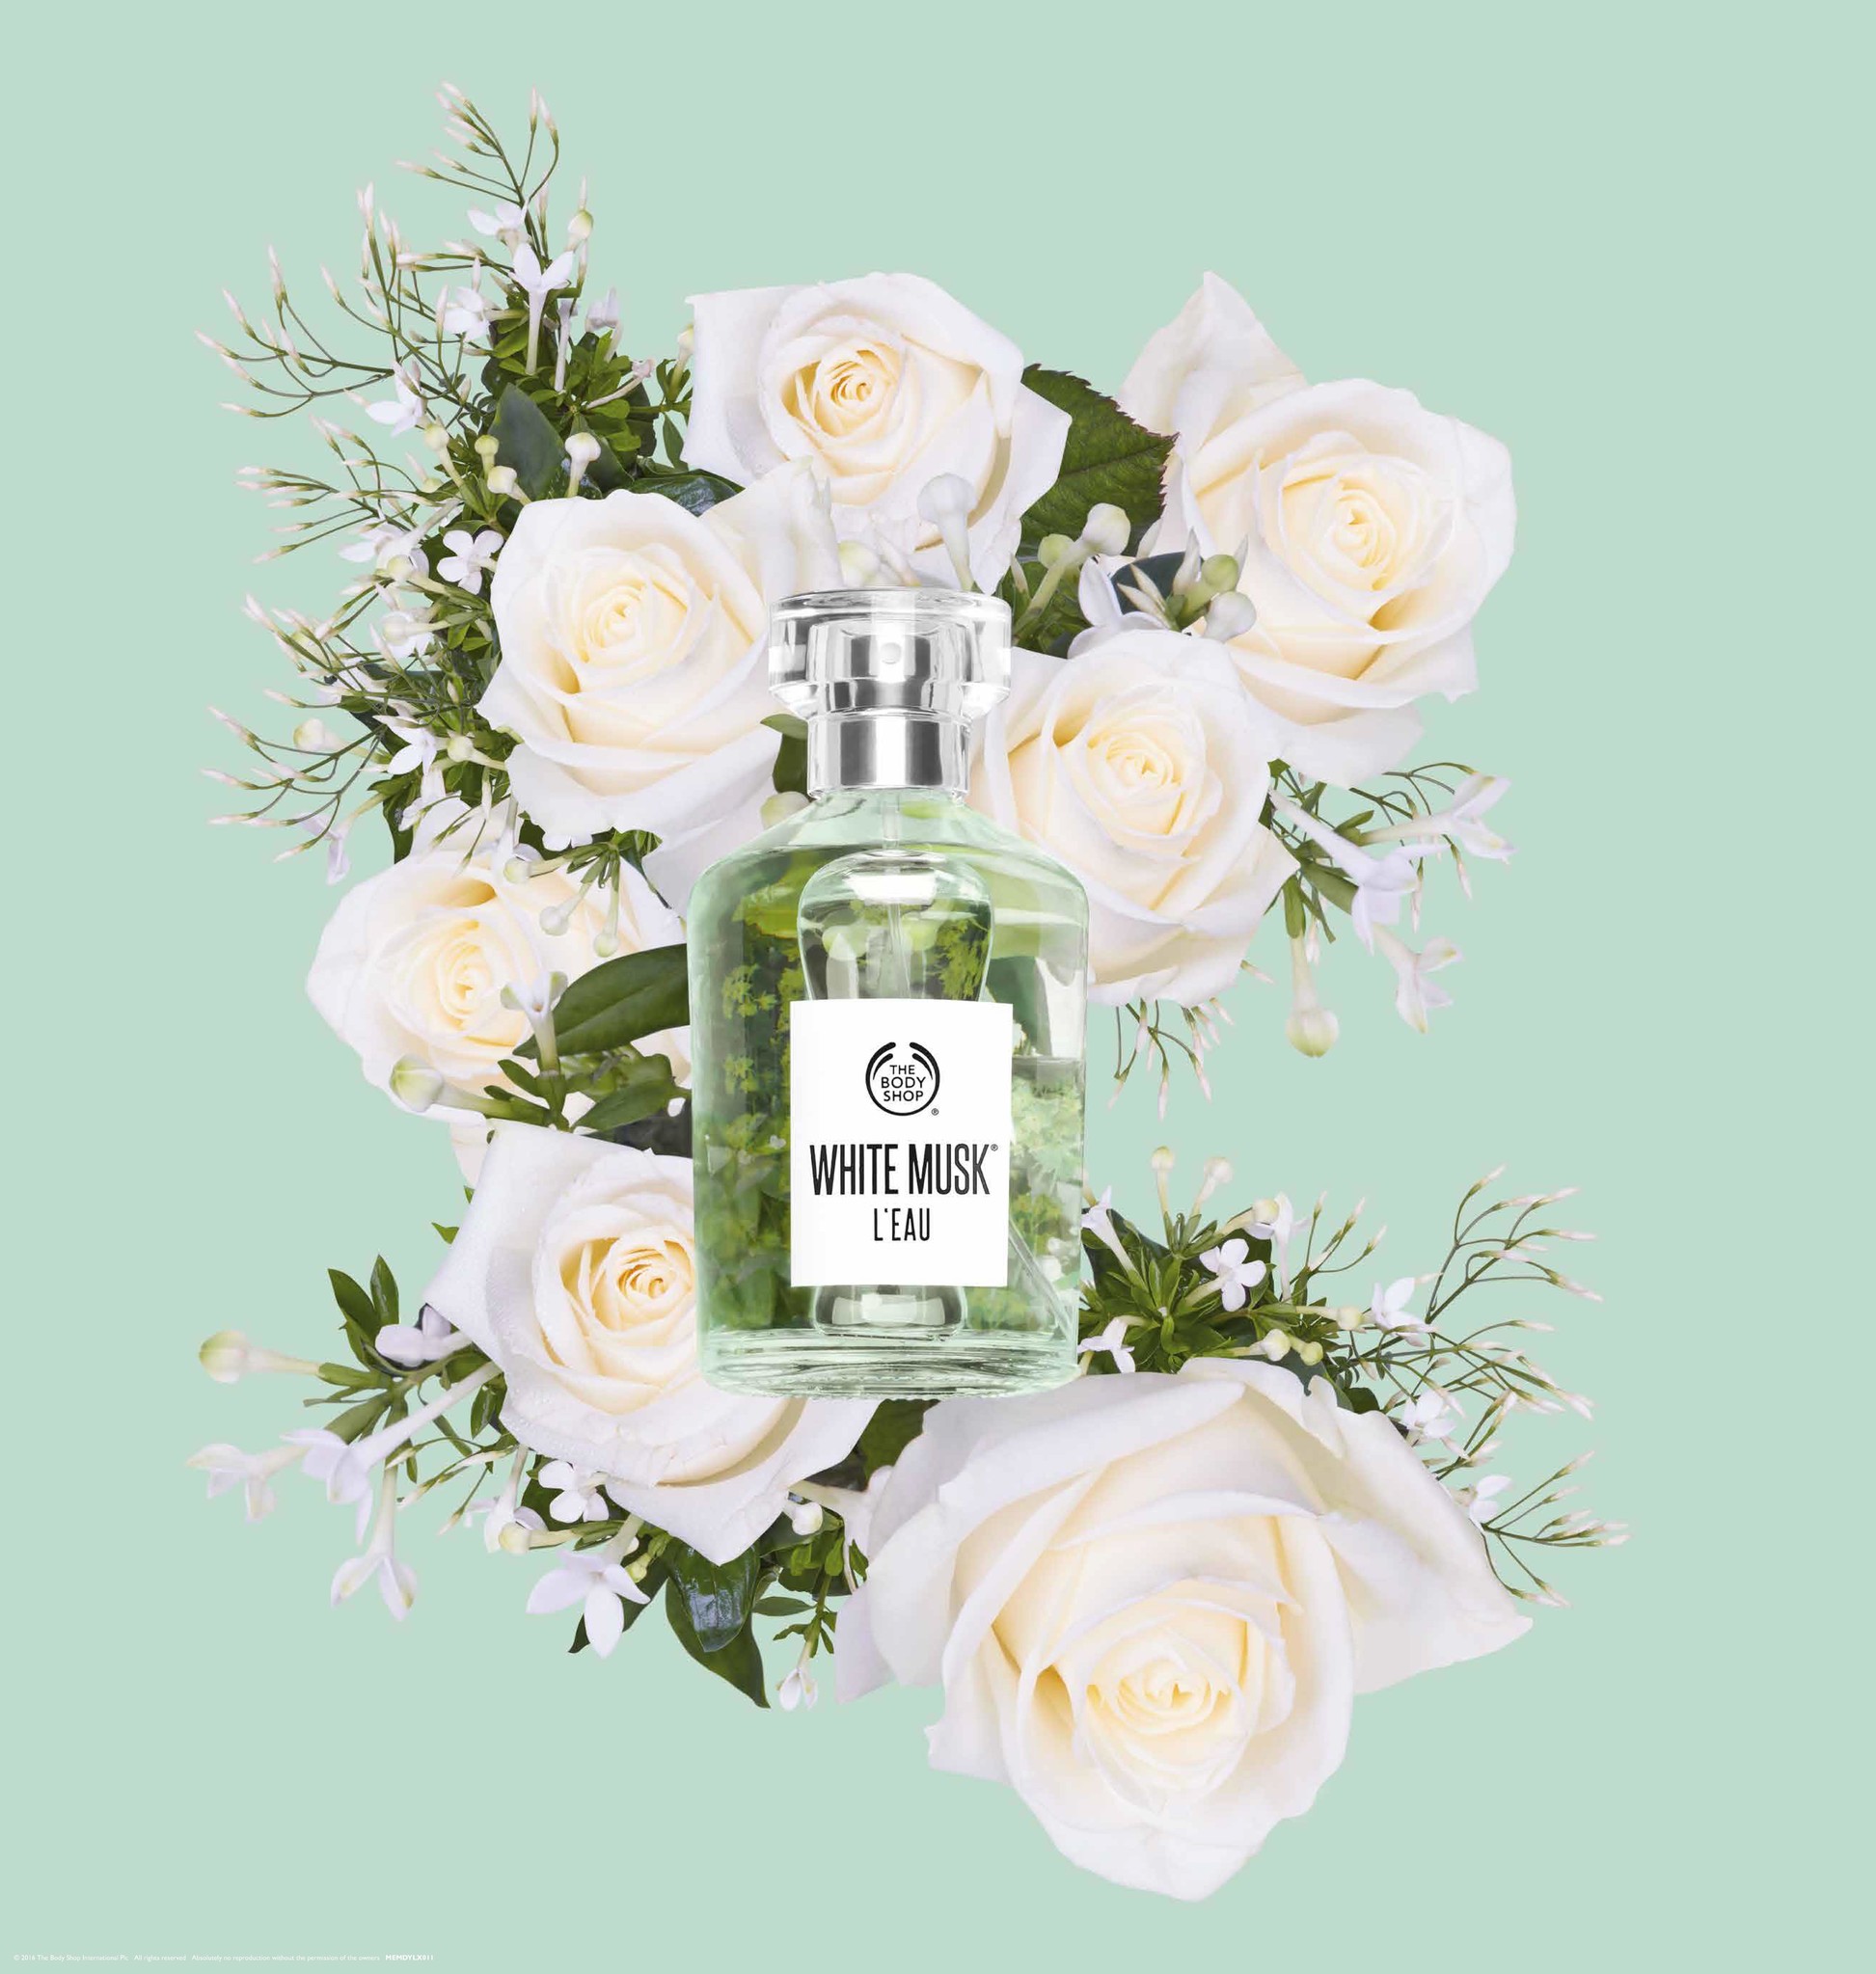 新製品 ピュアな香りをまとう 水 という名の新しいホワイトムスクの香り ホワイトムスク ロー 全3アイテム 17年8月17日 木 新発売 ザボディショップジャパン株式会社のプレスリリース